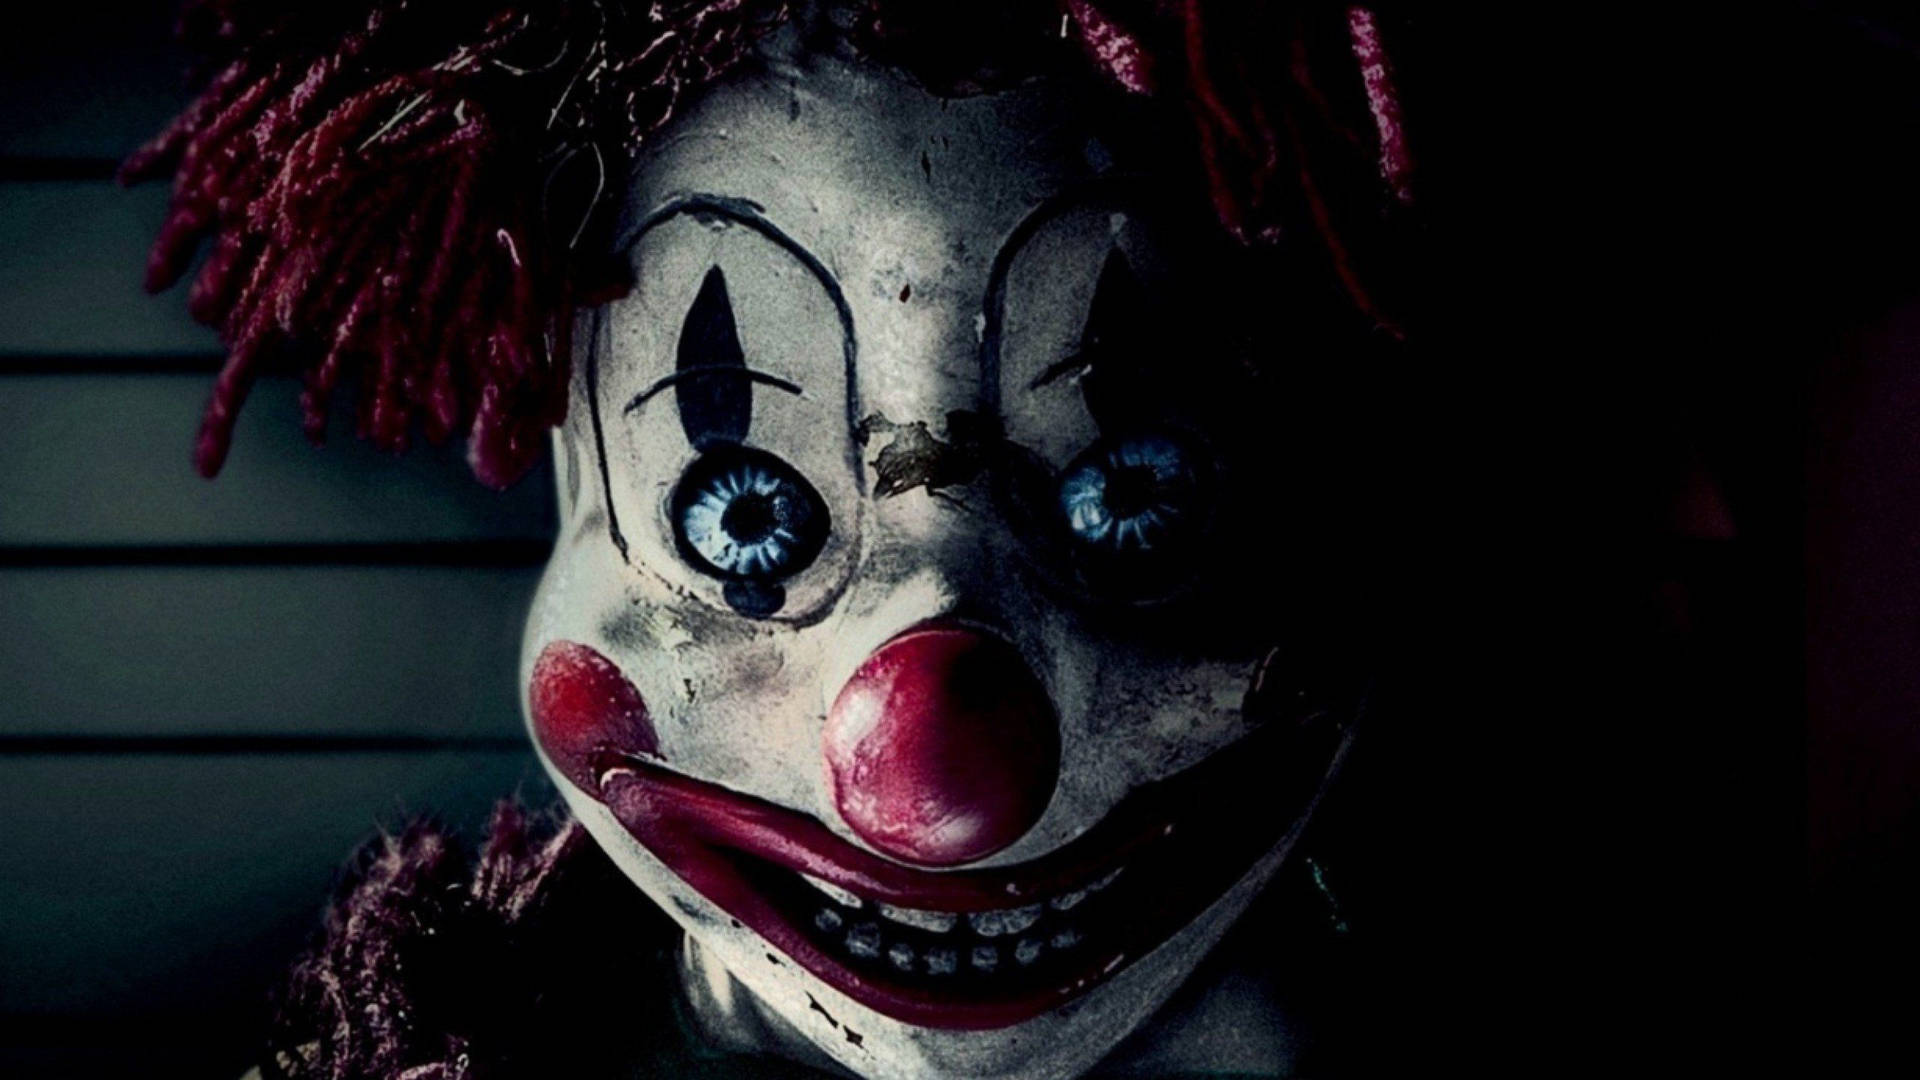 Beware of the creepily smiling clown Wallpaper